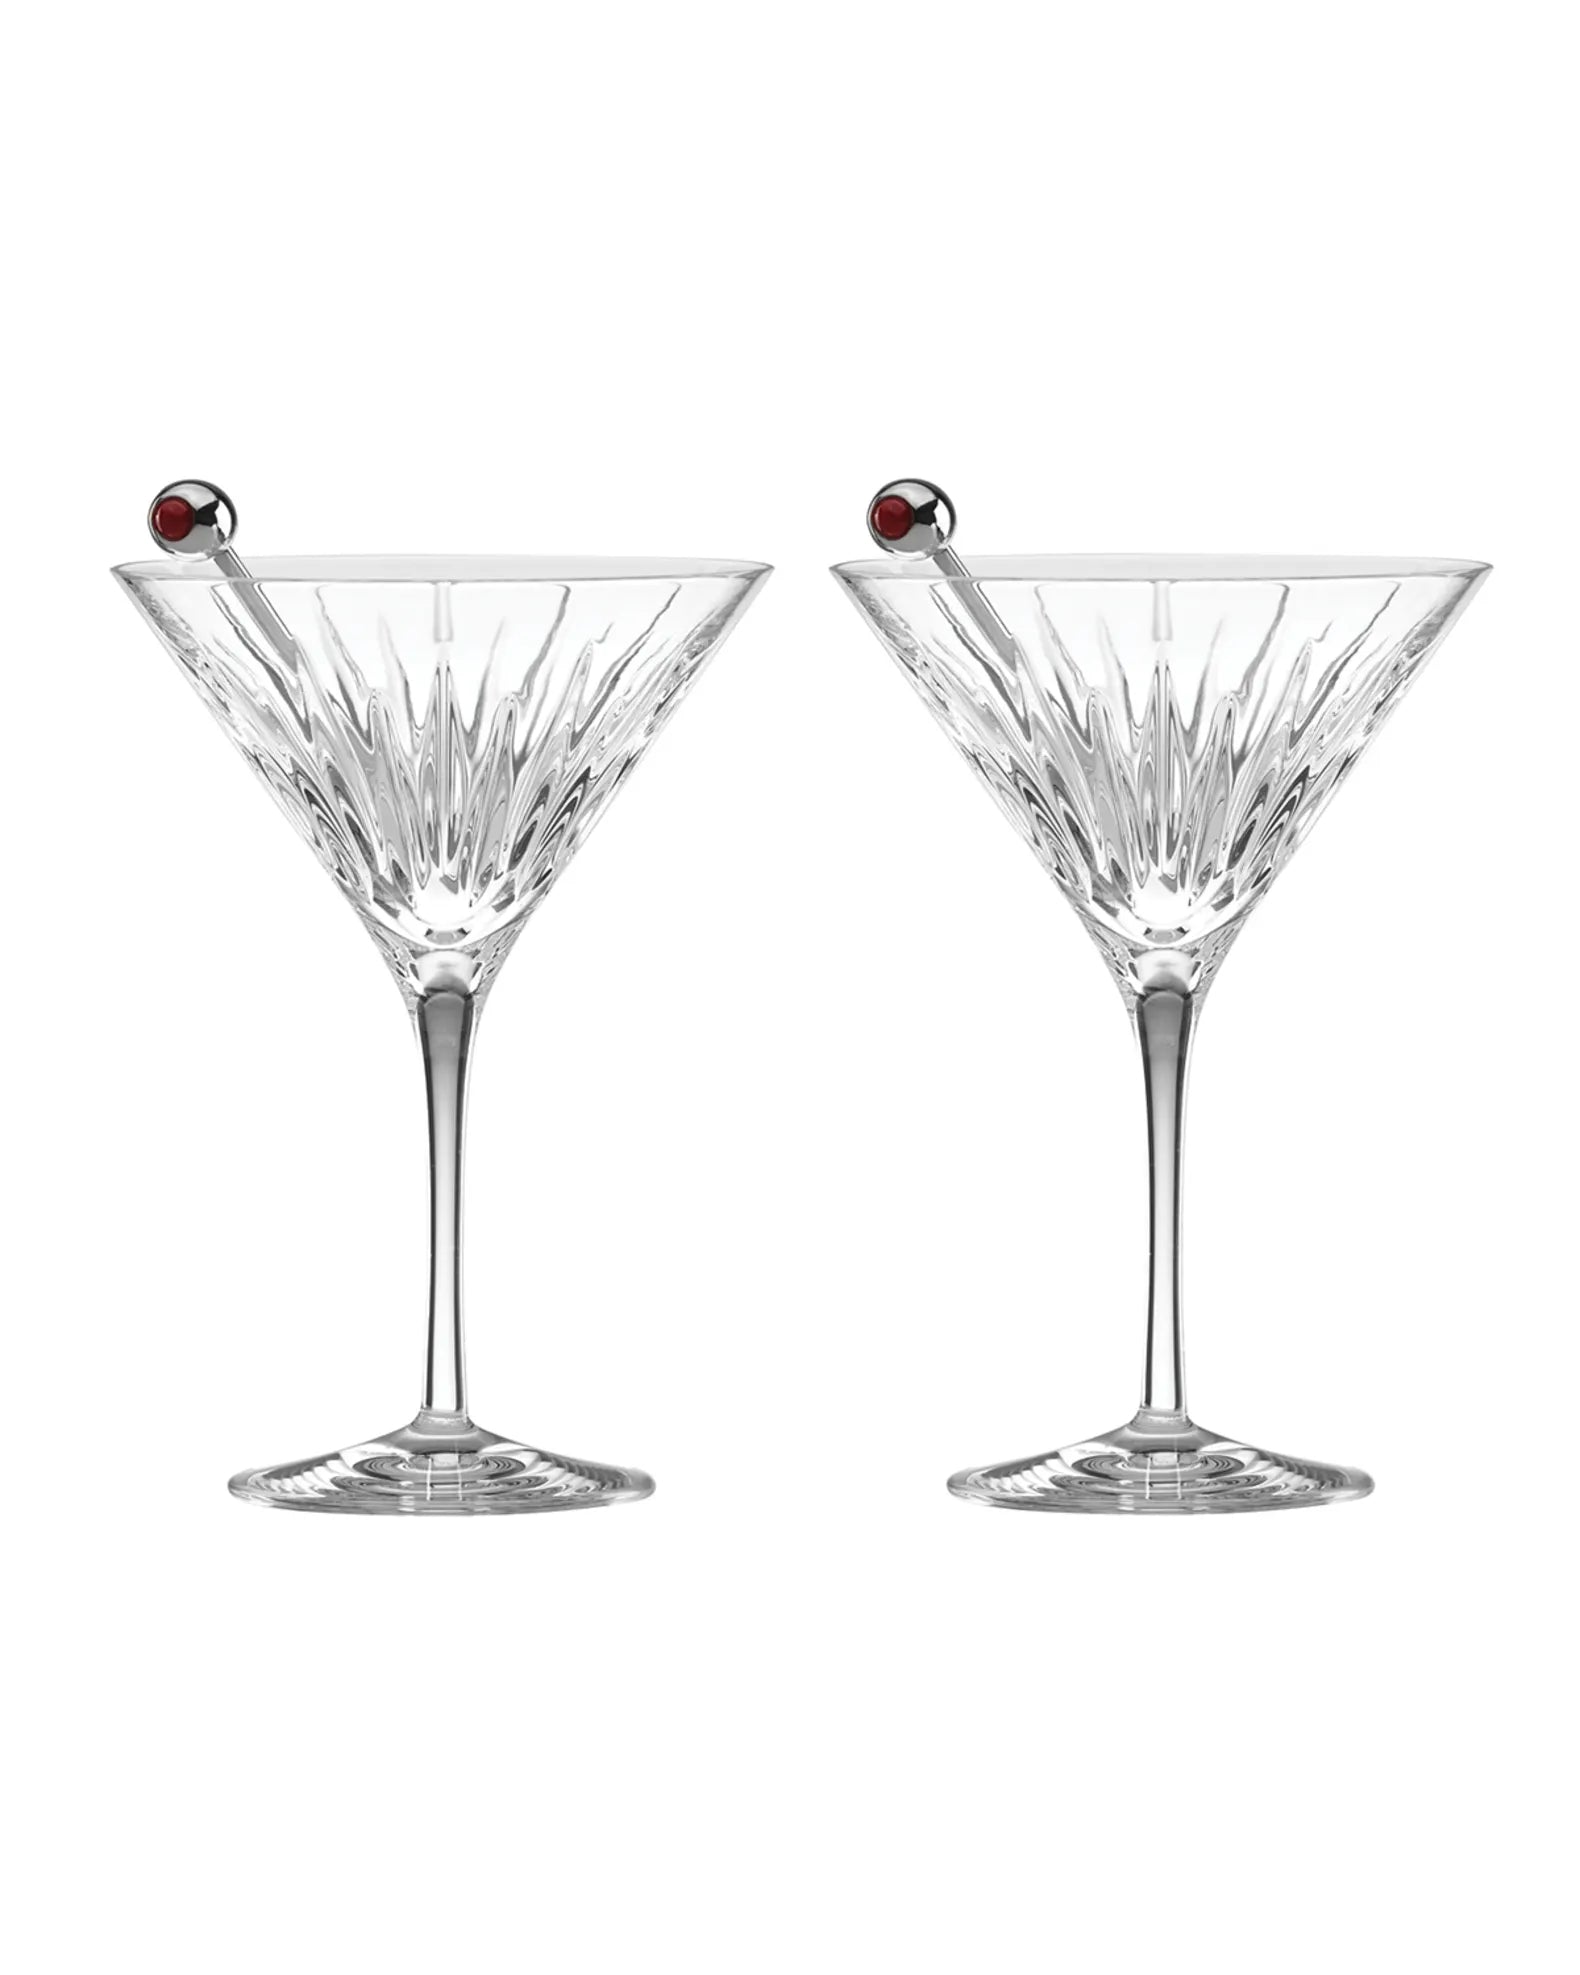 Soho Martini Set With Olive Picks